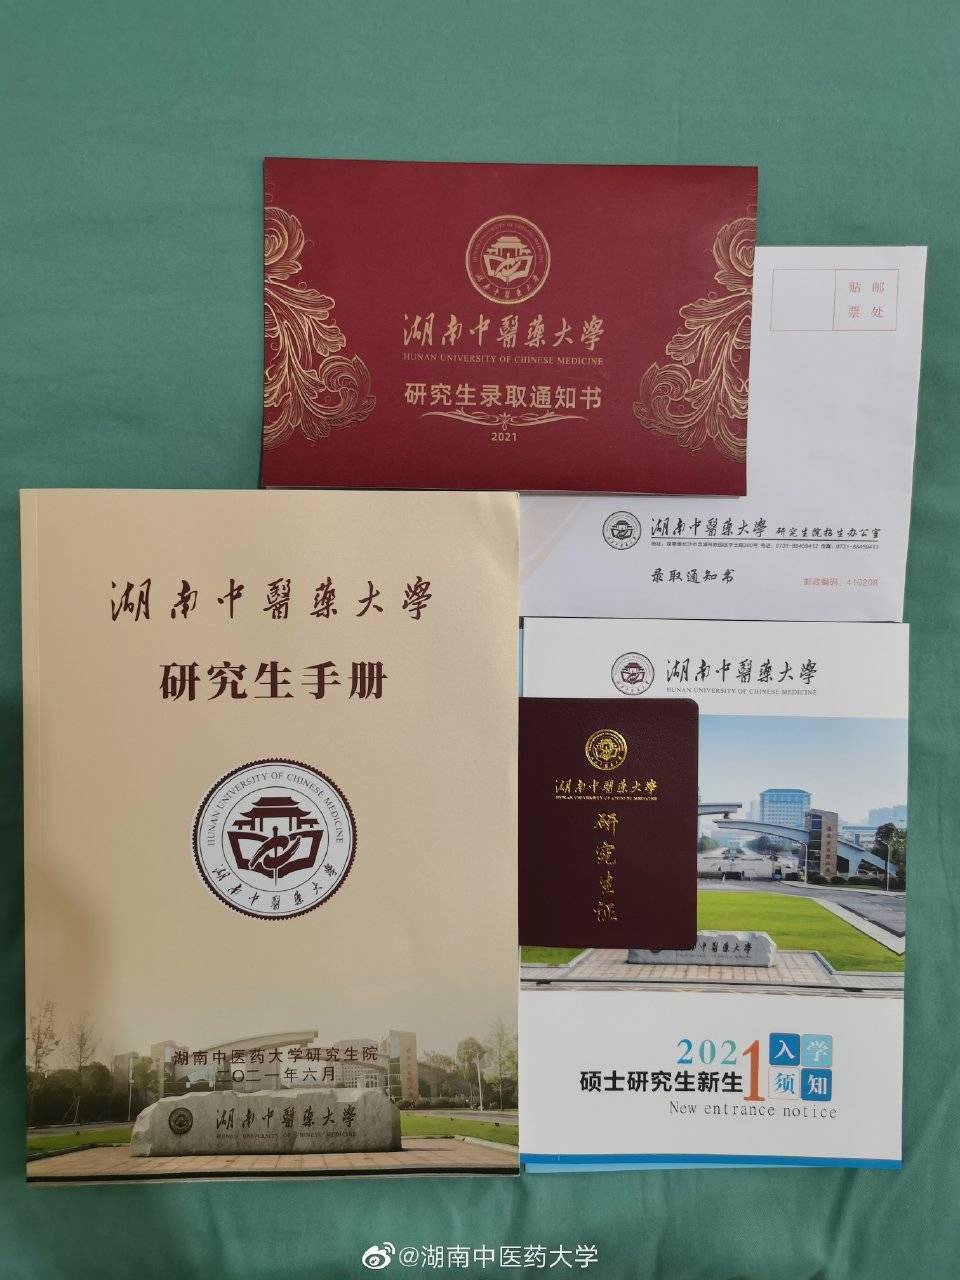 图片来自湖南中医药大学官方微博